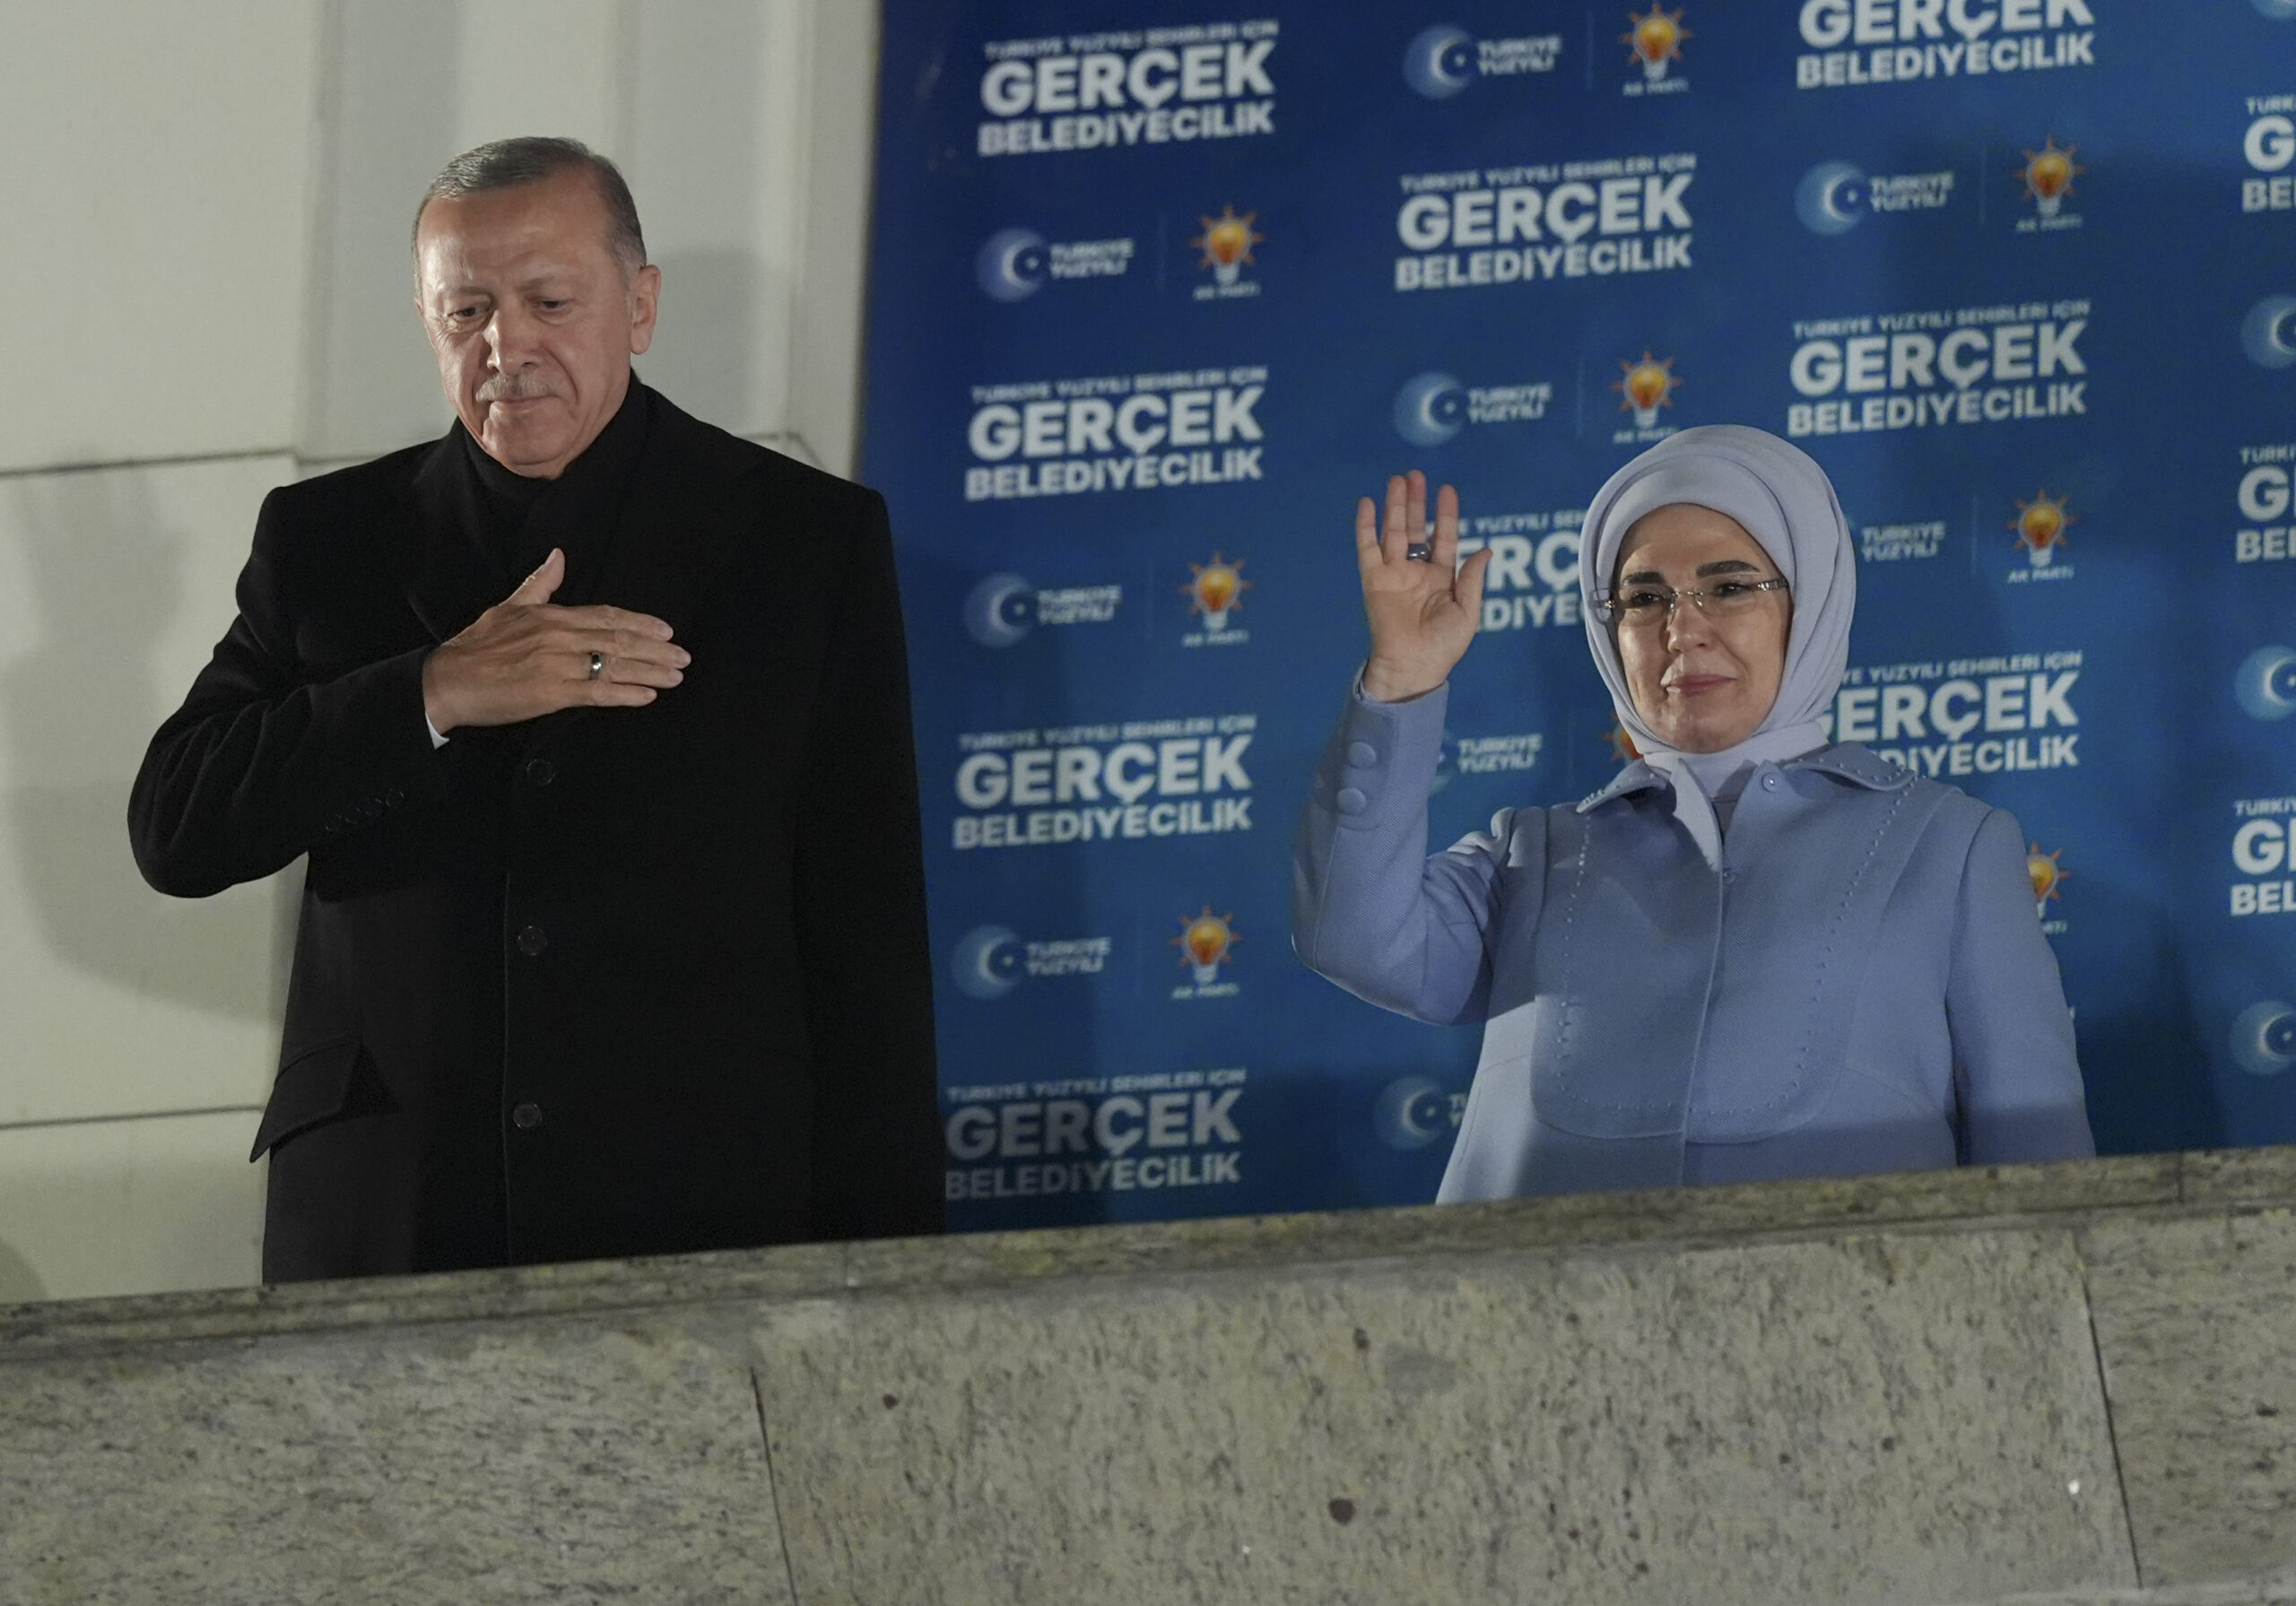 Presidenti i Turqisë, Recep Tayyip Erdoğan, në adresimin e tij paszgjedhor. Foto nga Emin Sansar - Anadolu Agency